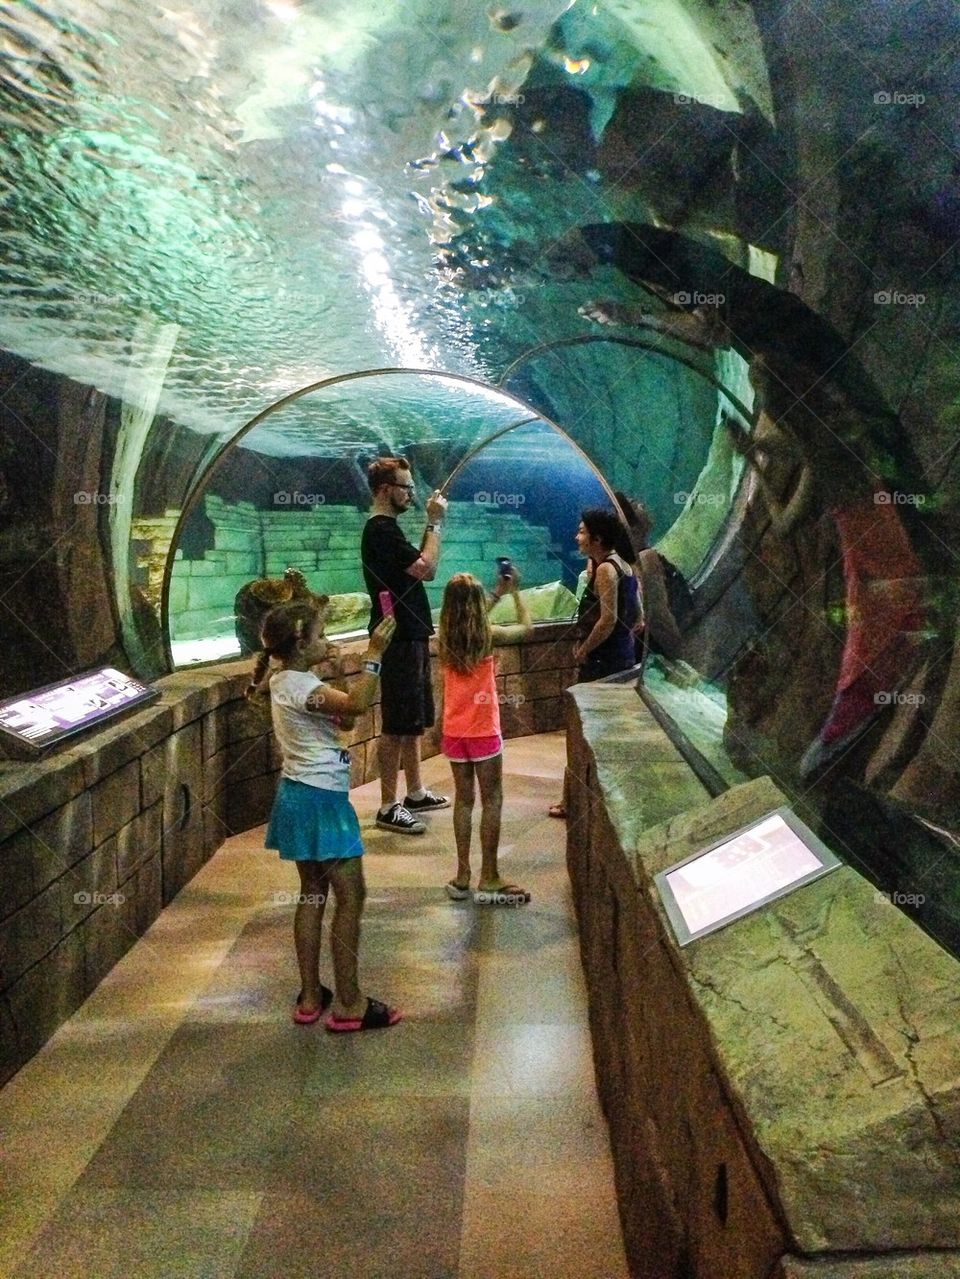 Mall of America indoor aquarium 